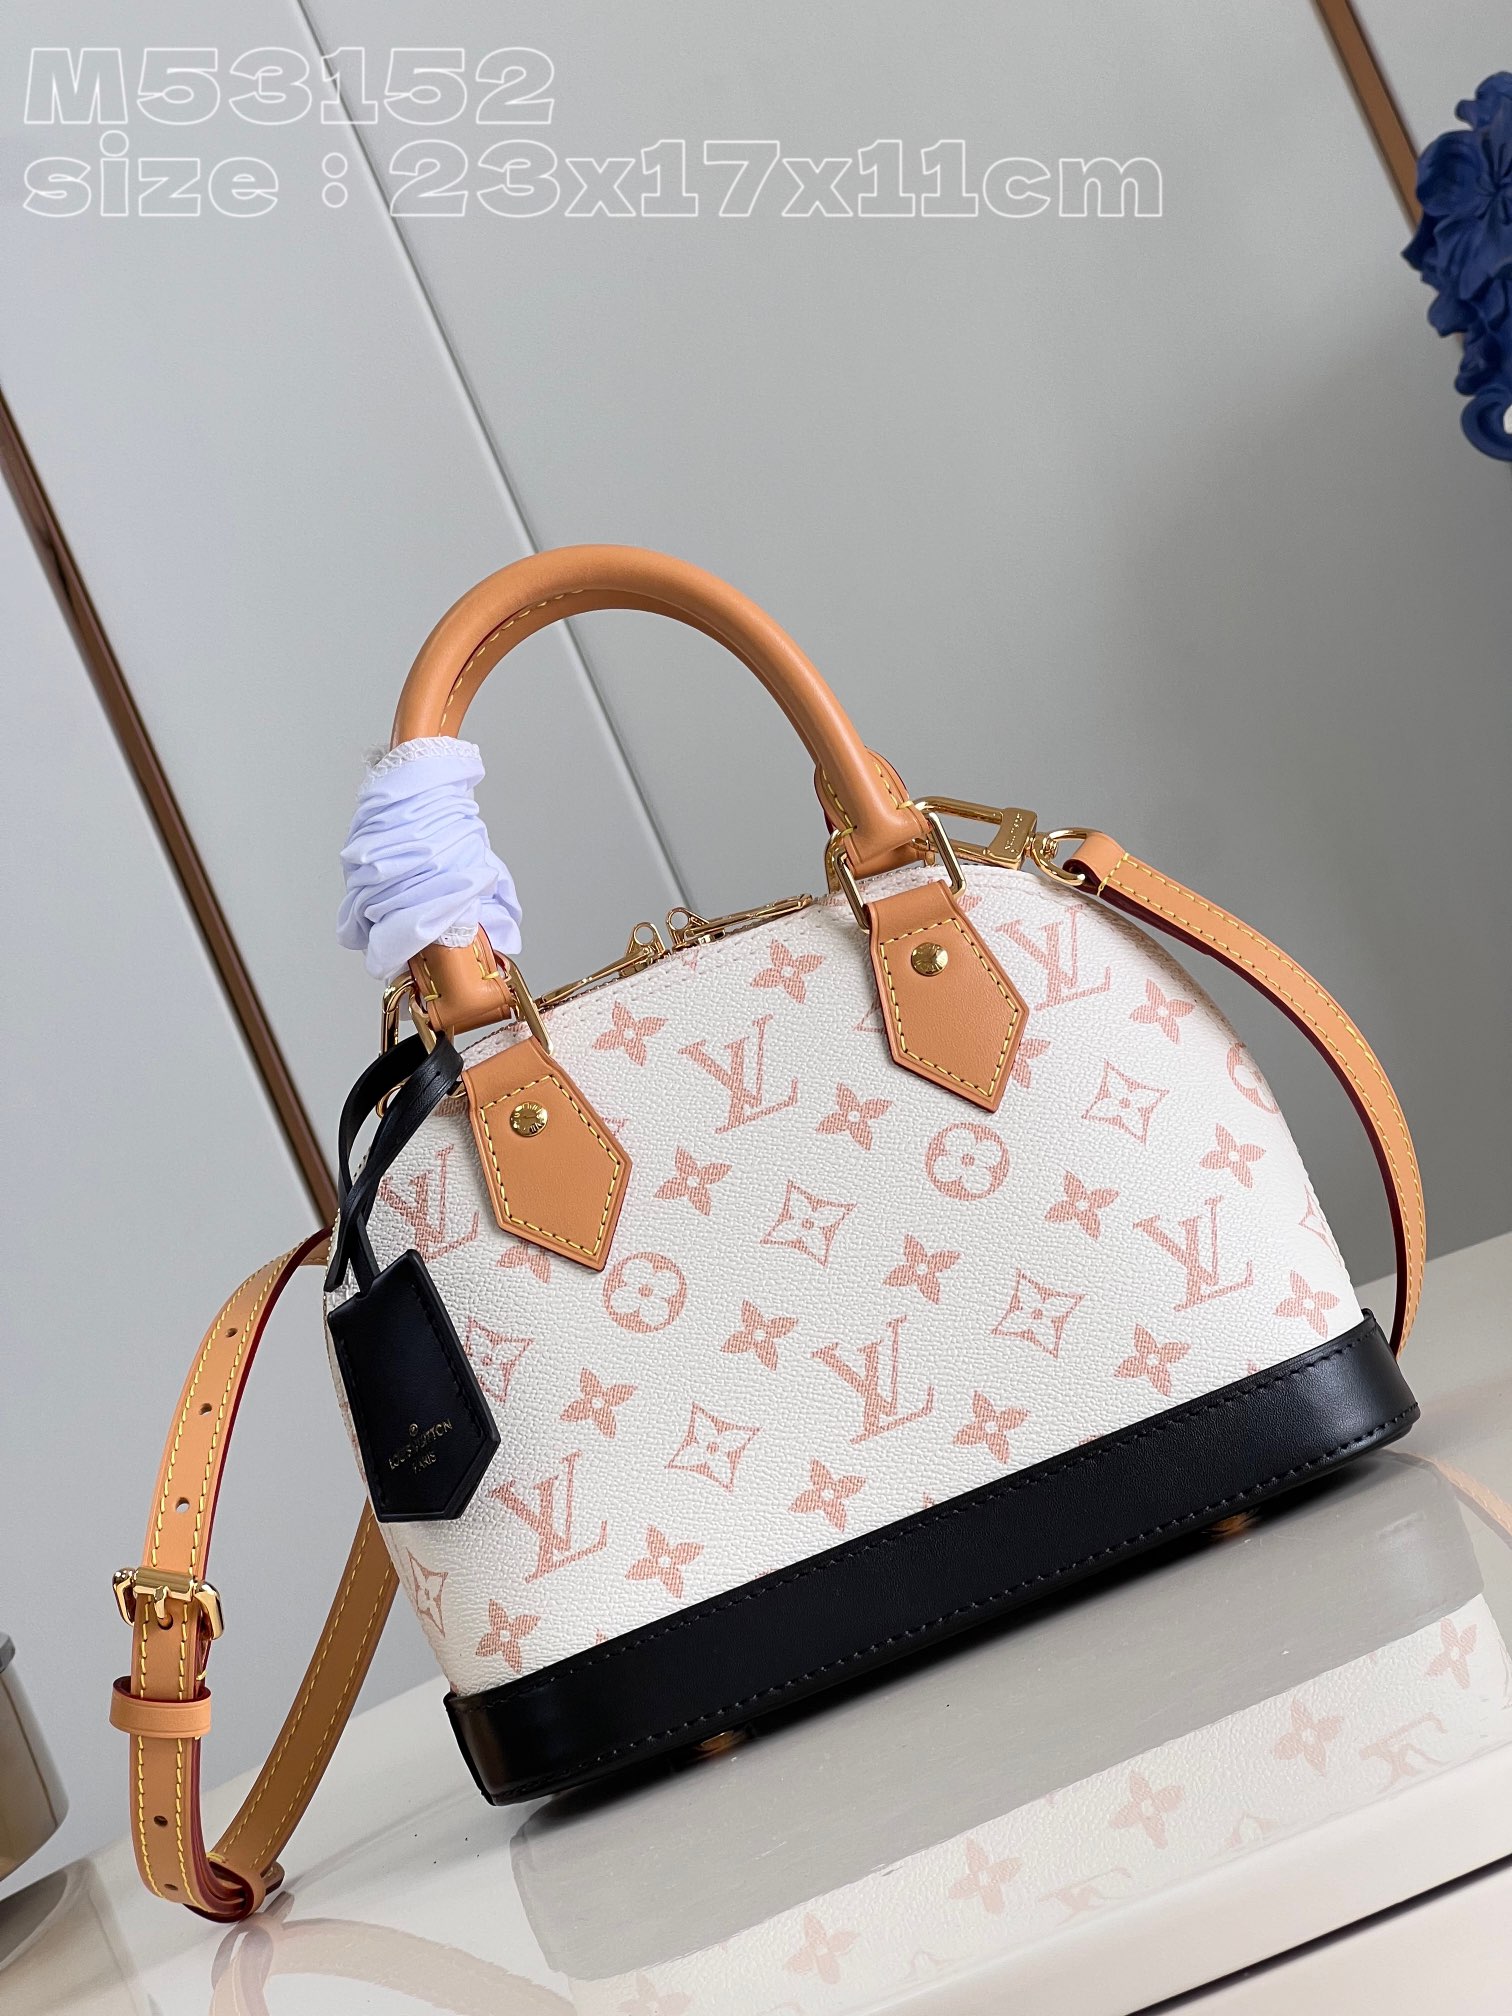 Louis Vuitton LV Alma BB Bags Handbags White Canvas Cowhide M53152